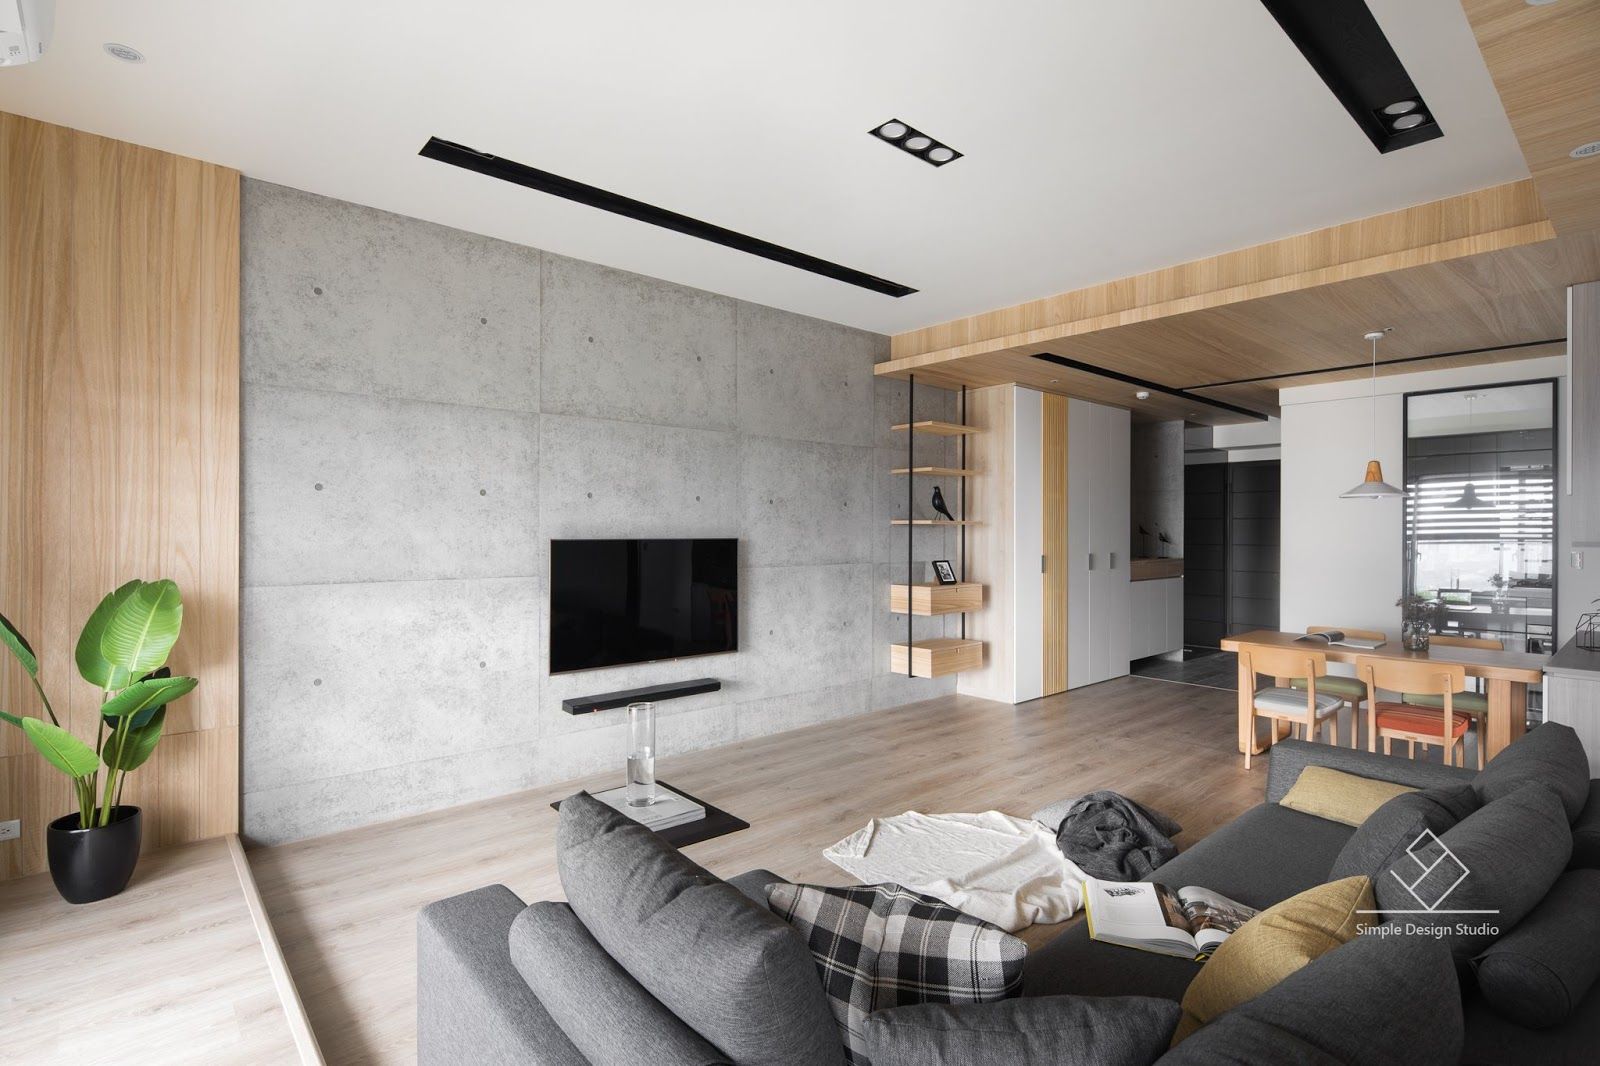 客廳設計 極簡室內設計 Simple Design Studio 客廳 客廳,電視牆,清水模